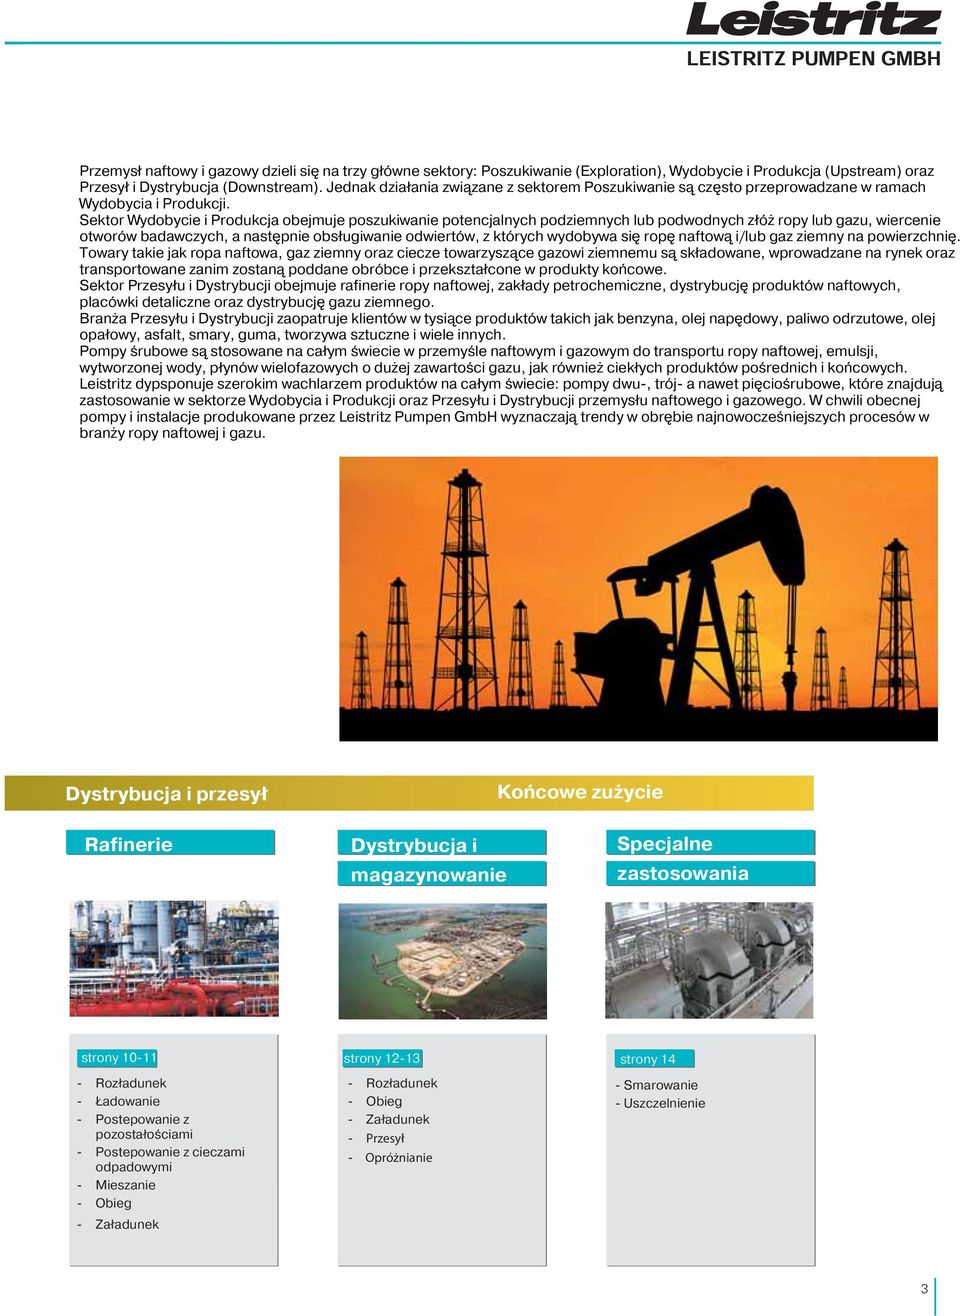 Sektor Wydobycie i Produkcja obejmuje poszukiwanie potencjalnych podziemnych lub podwodnych złóż ropy lub gazu, wiercenie otworów badawczych, a następnie obsługiwanie odwiertów, z których wydobywa